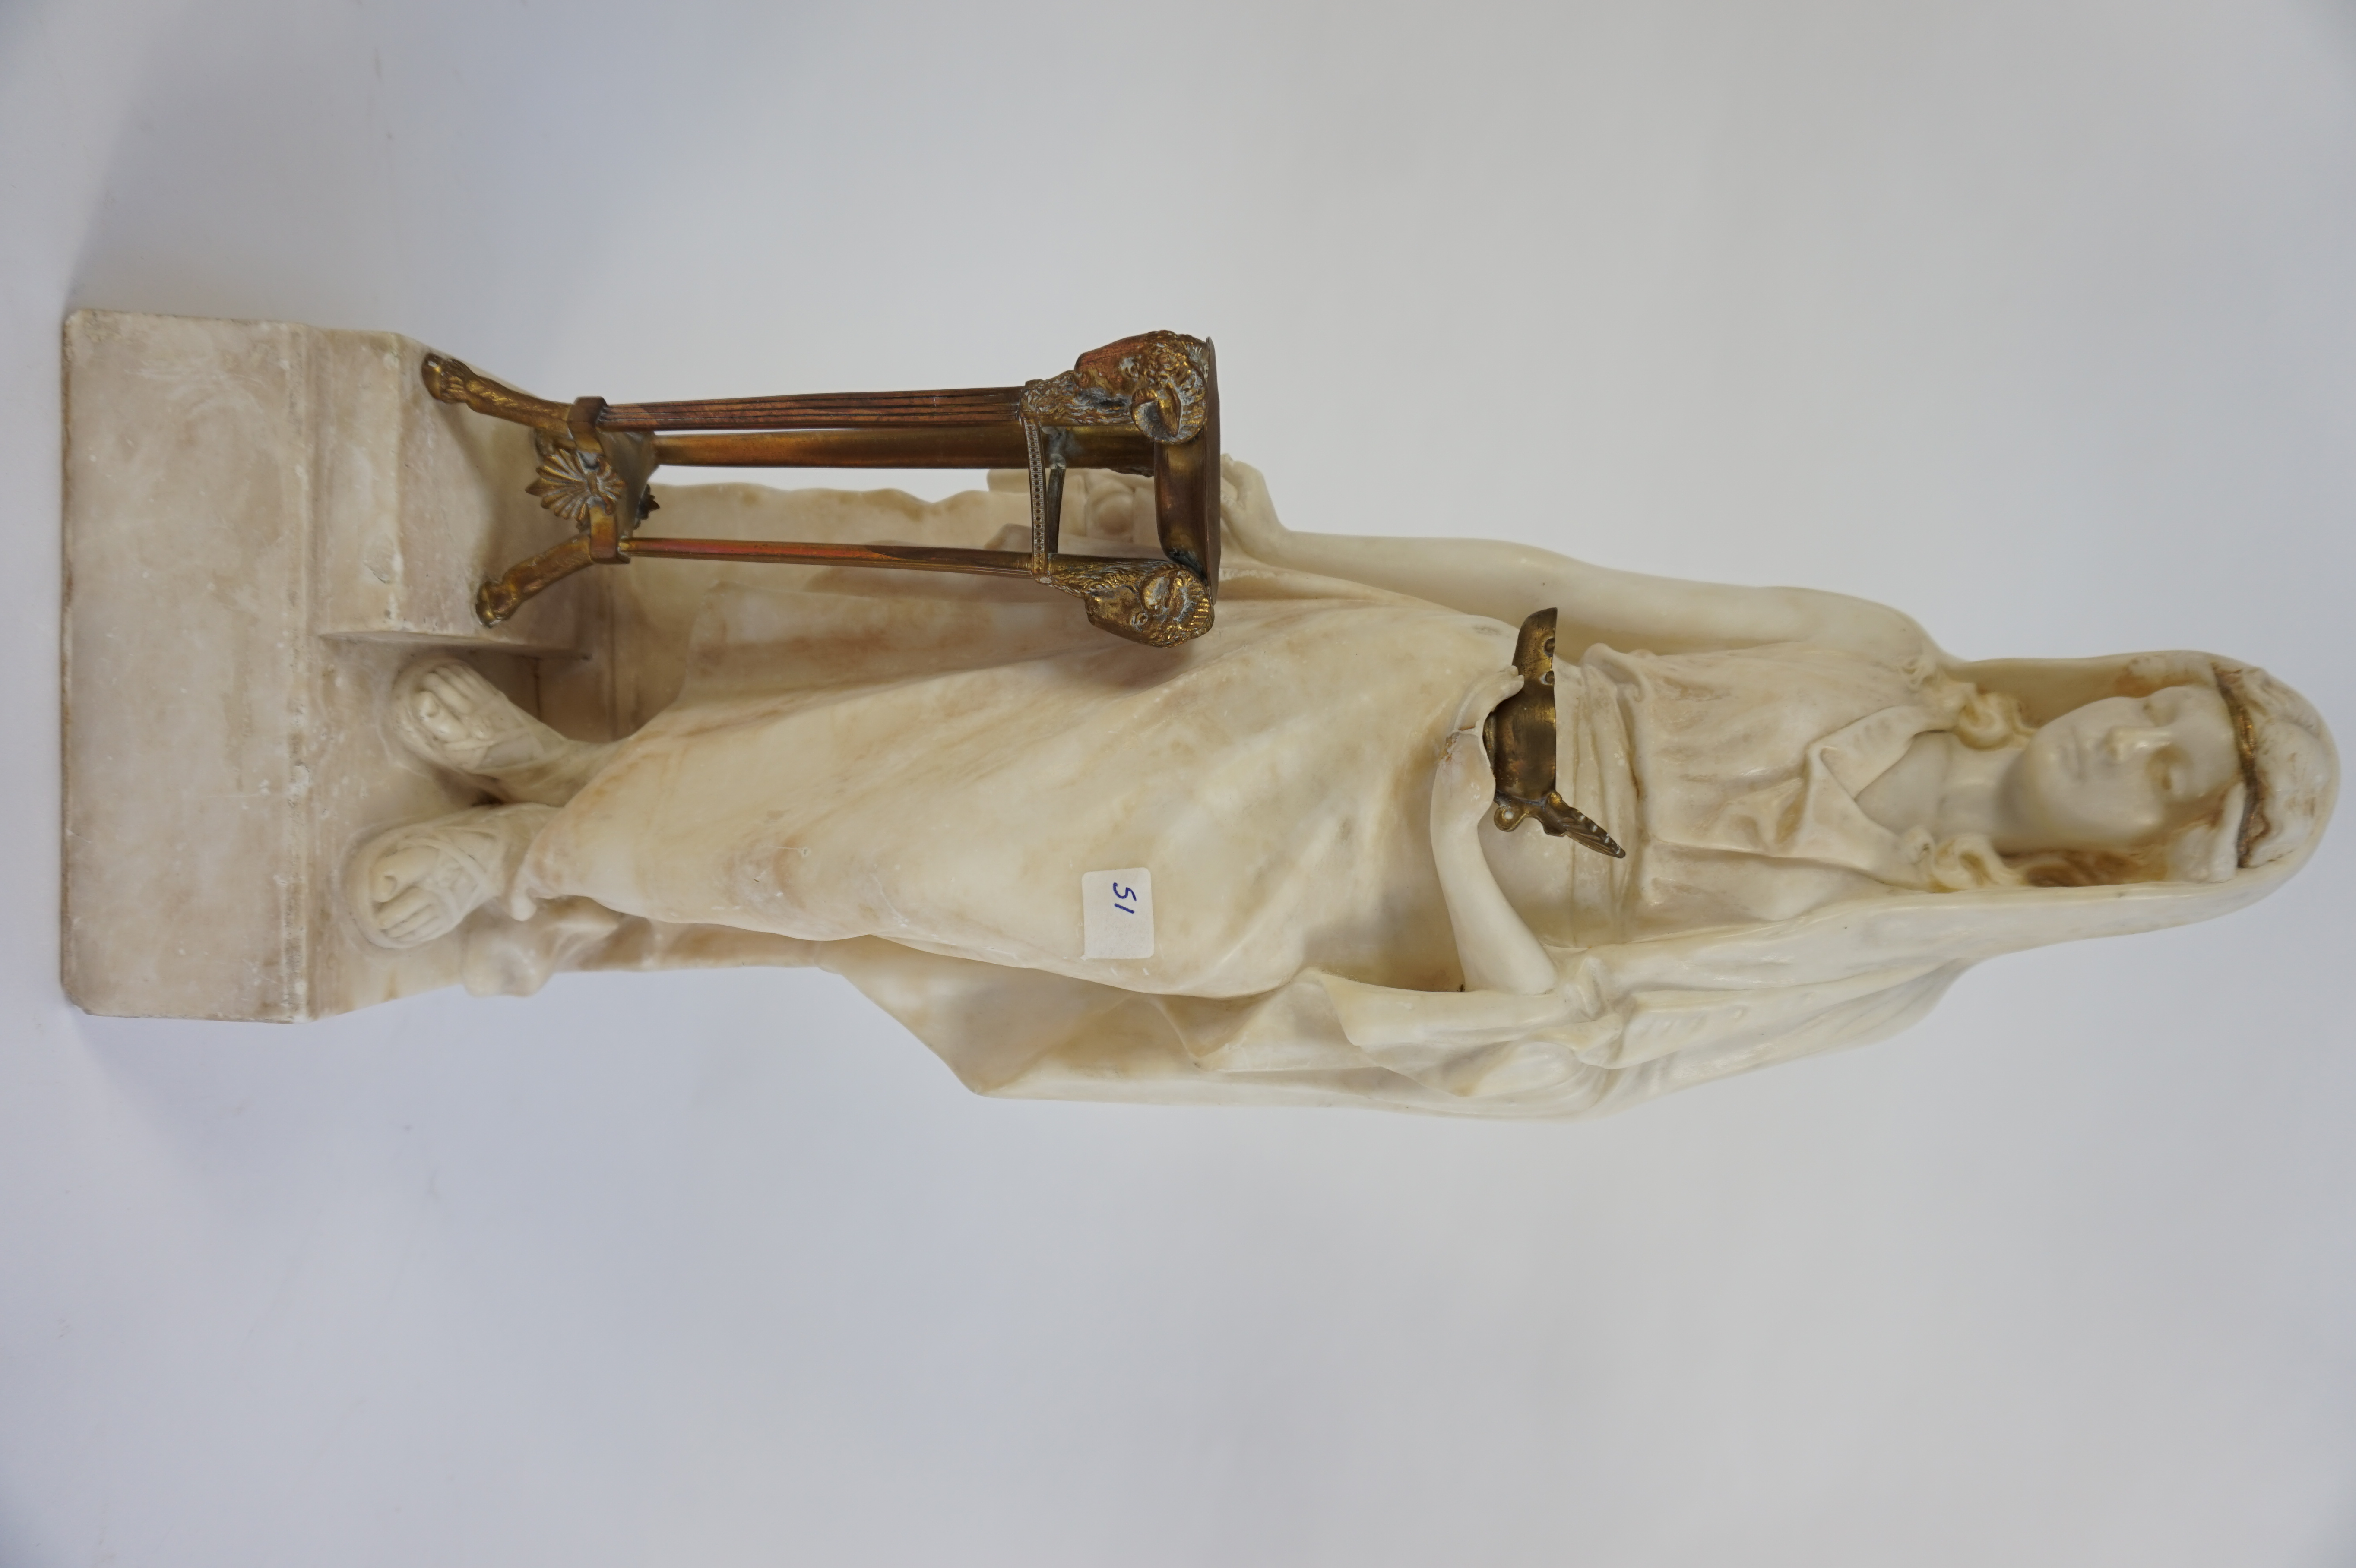 Statuette de femme à la lampe à huile en bronze et athénienne à pied de bélier en bronze. Marbre blanc. Accident à la main. Hauteur: 51cm.